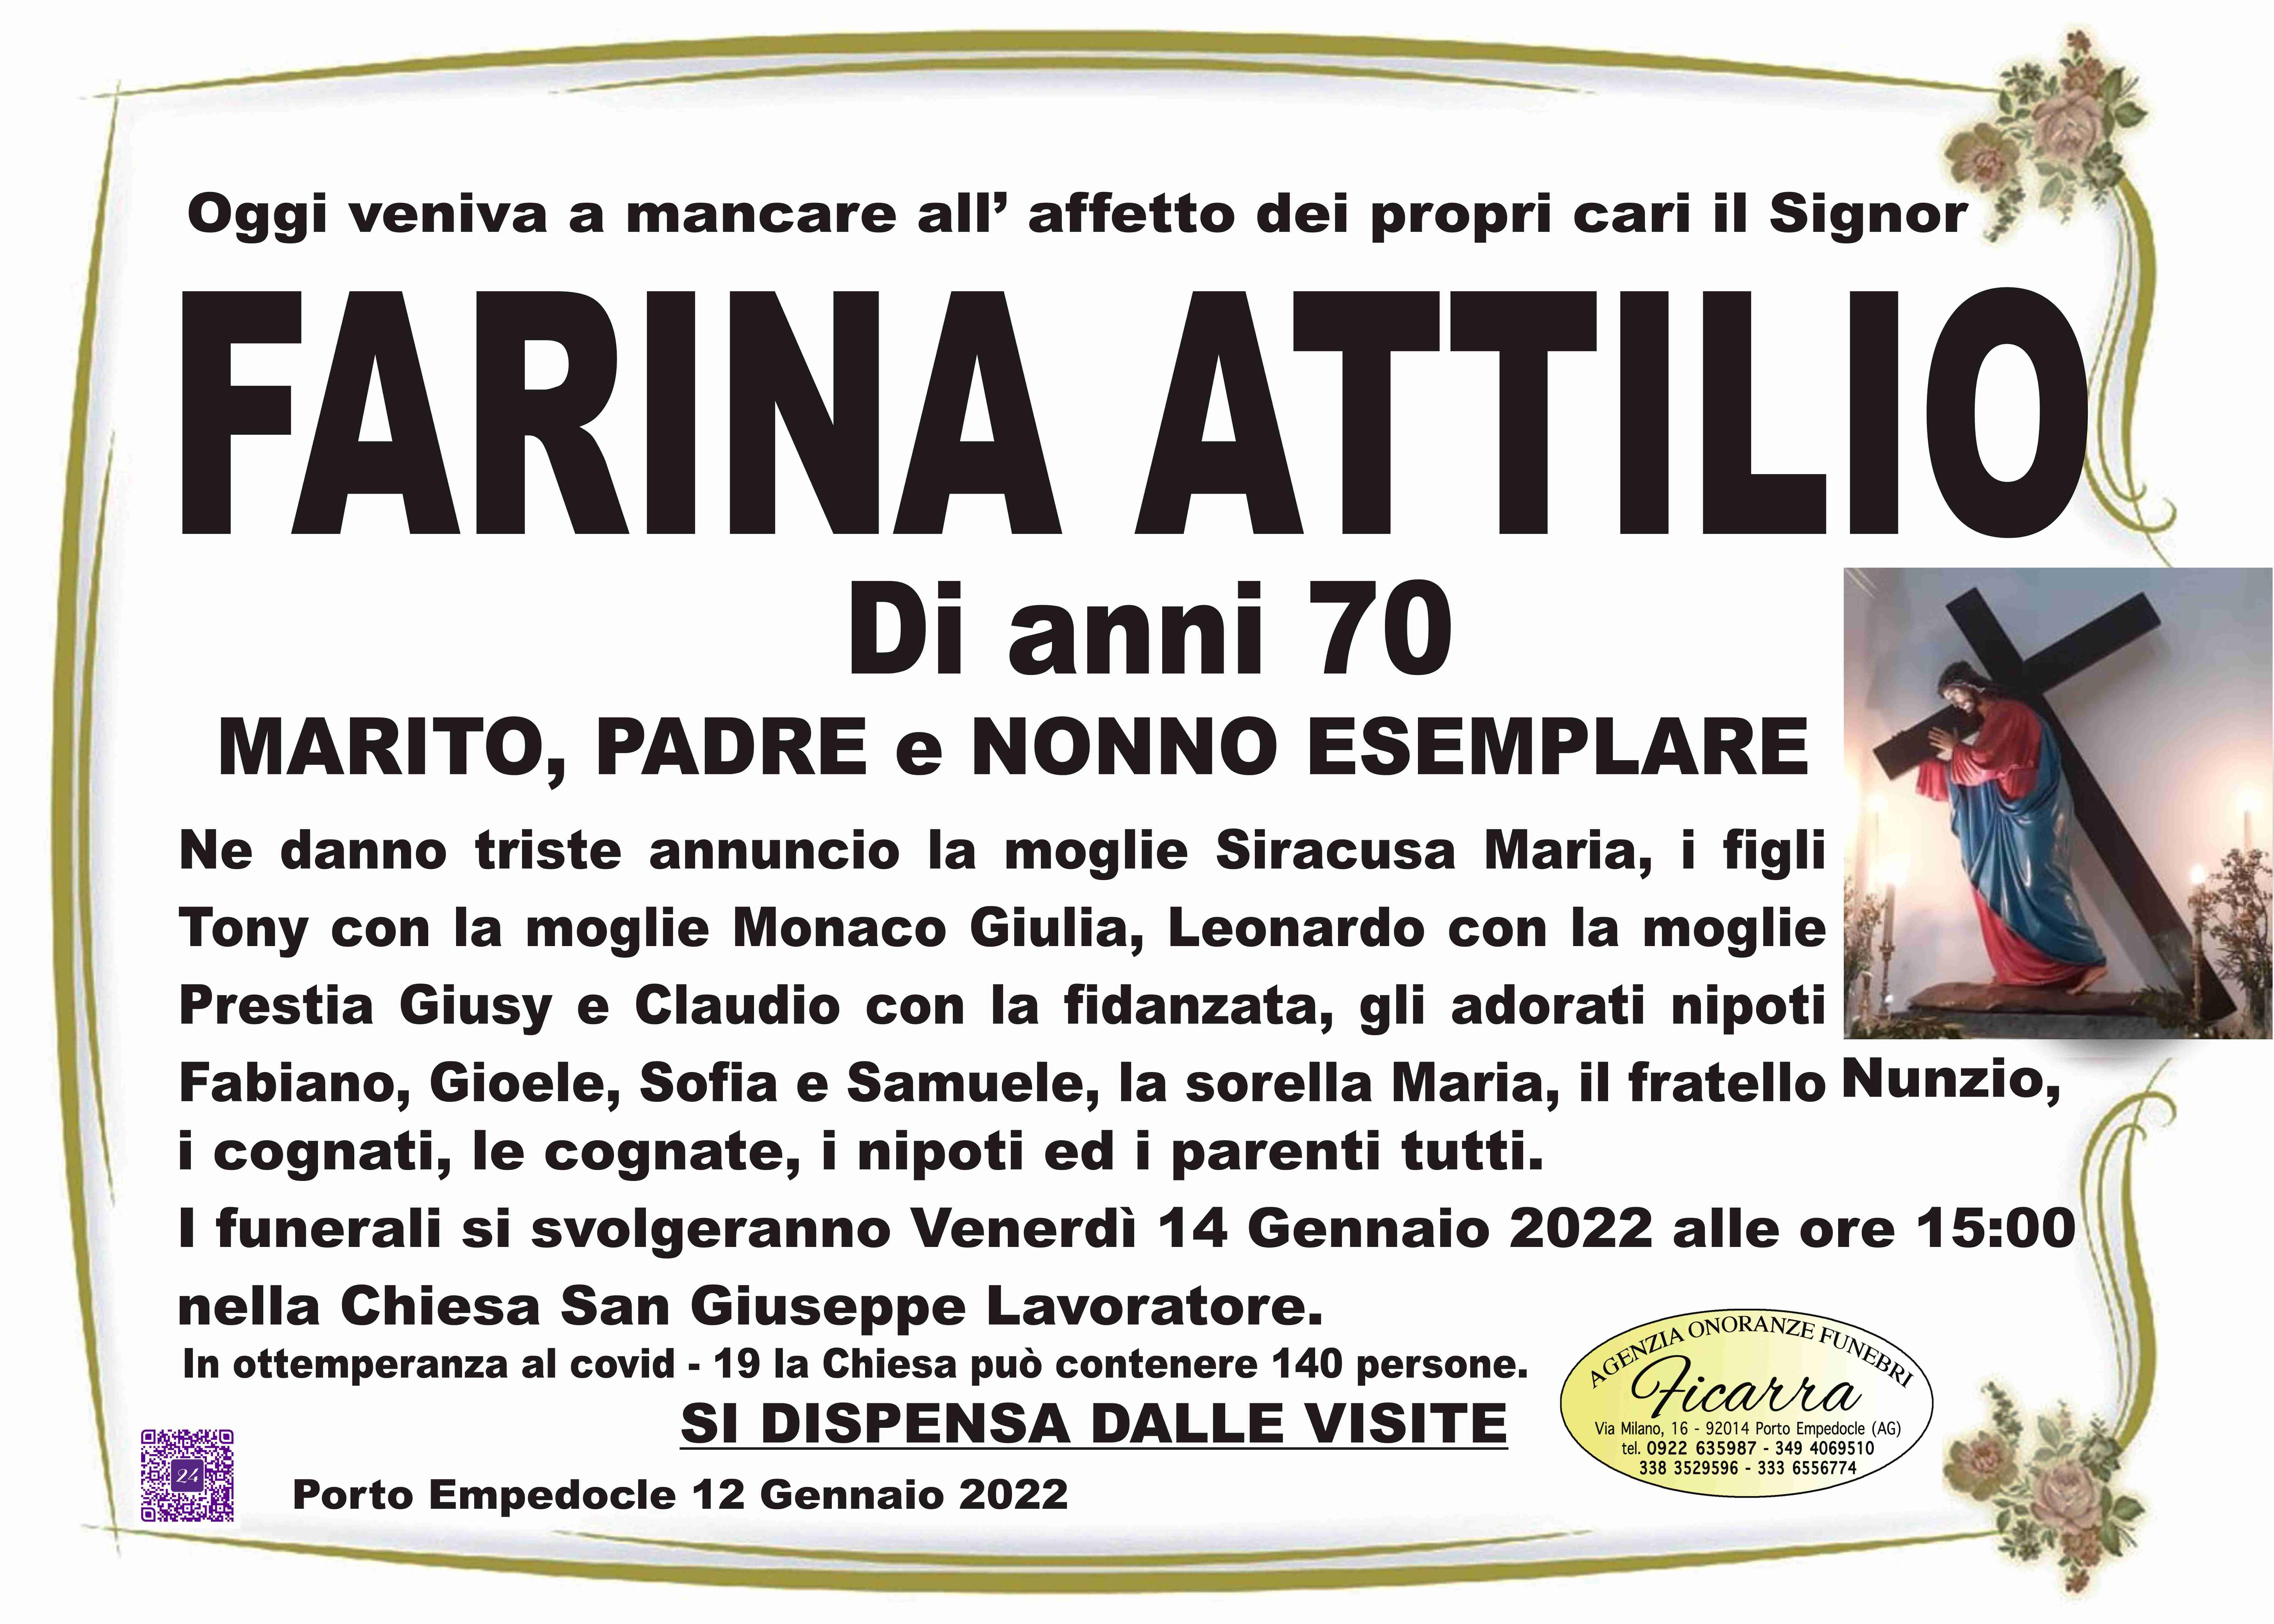 Attilio Farina